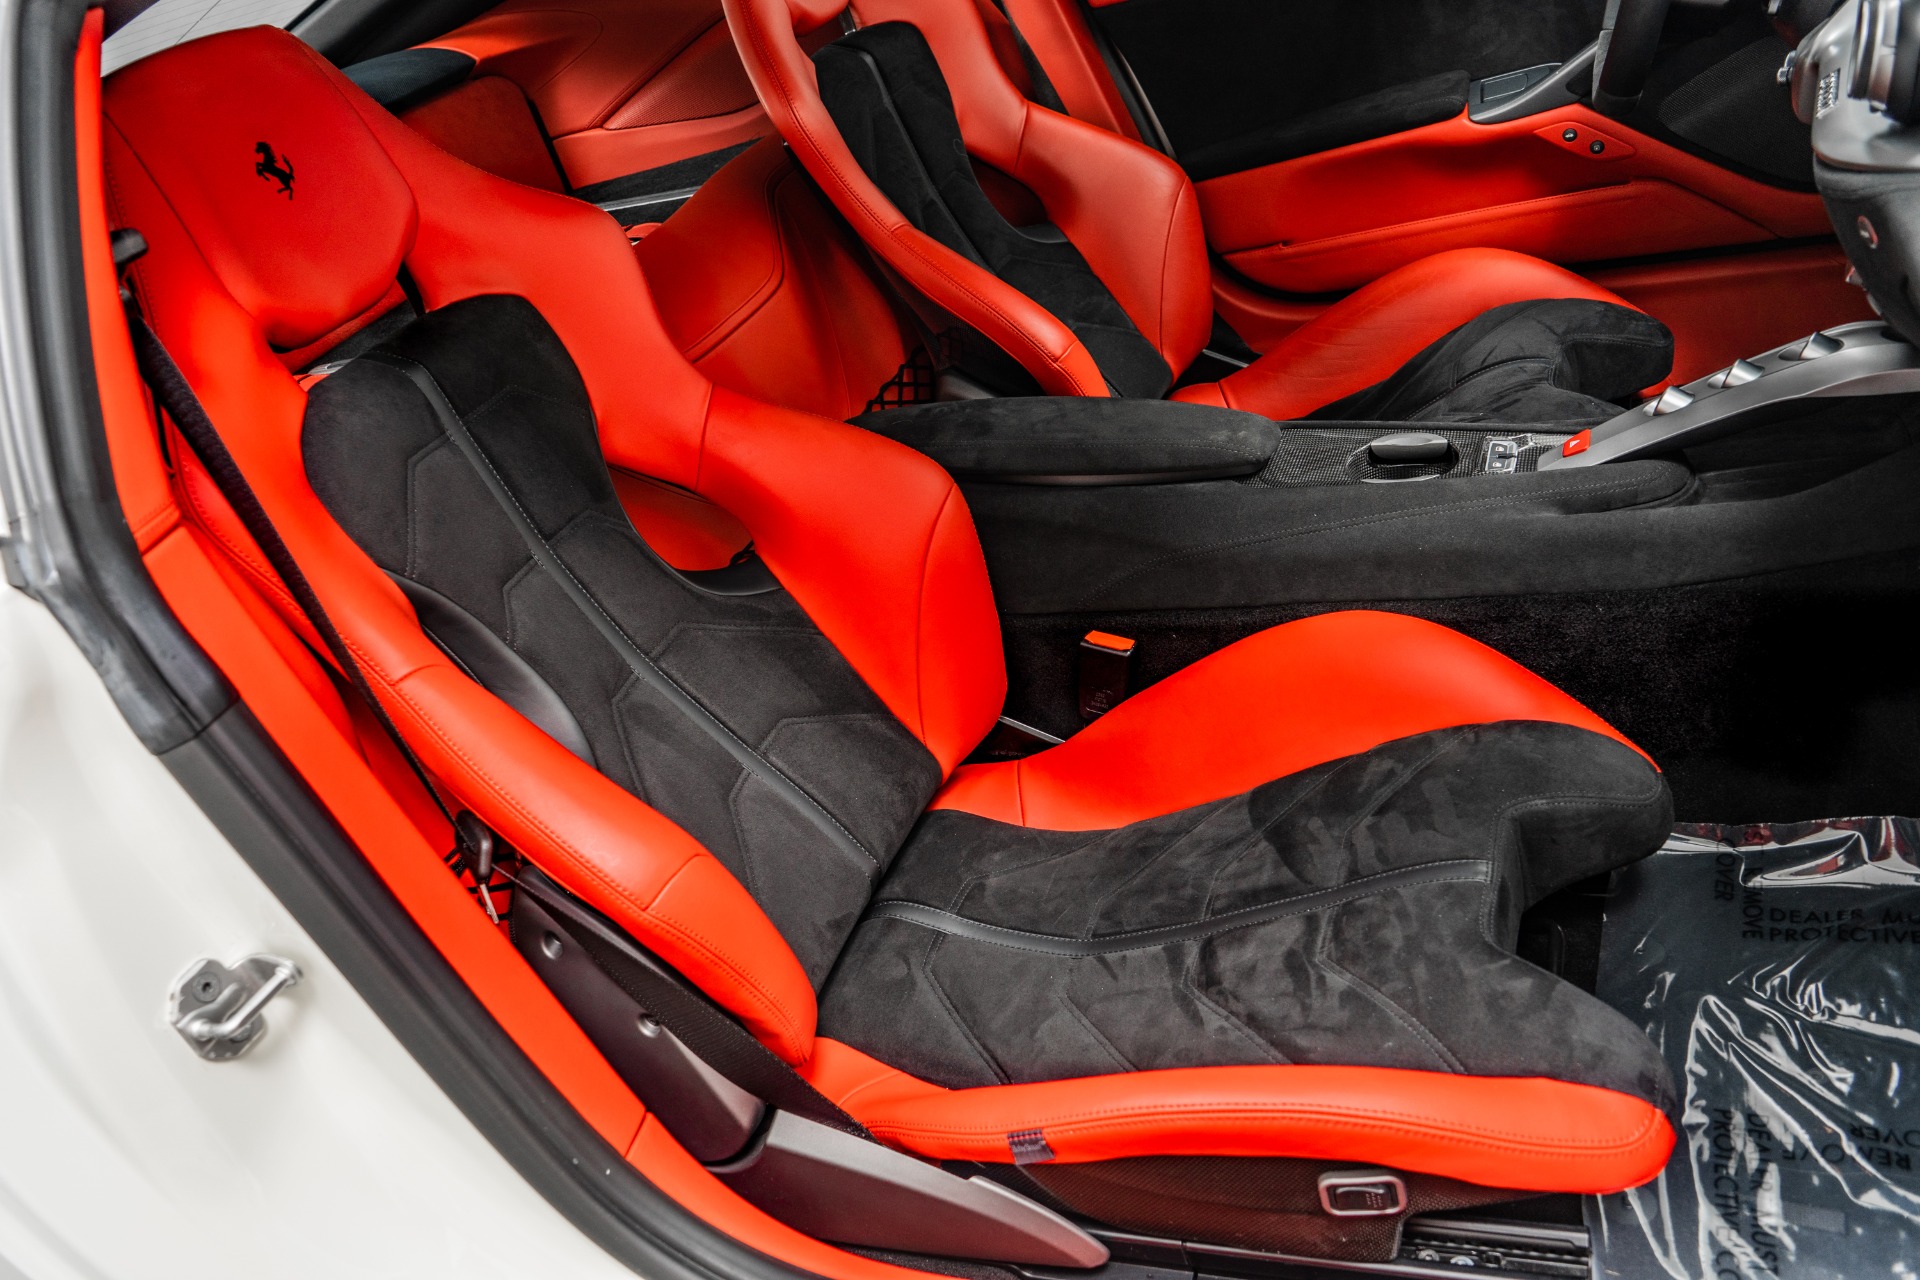 Ferrari F12berlinetta Price, Interior, & Engine Specs